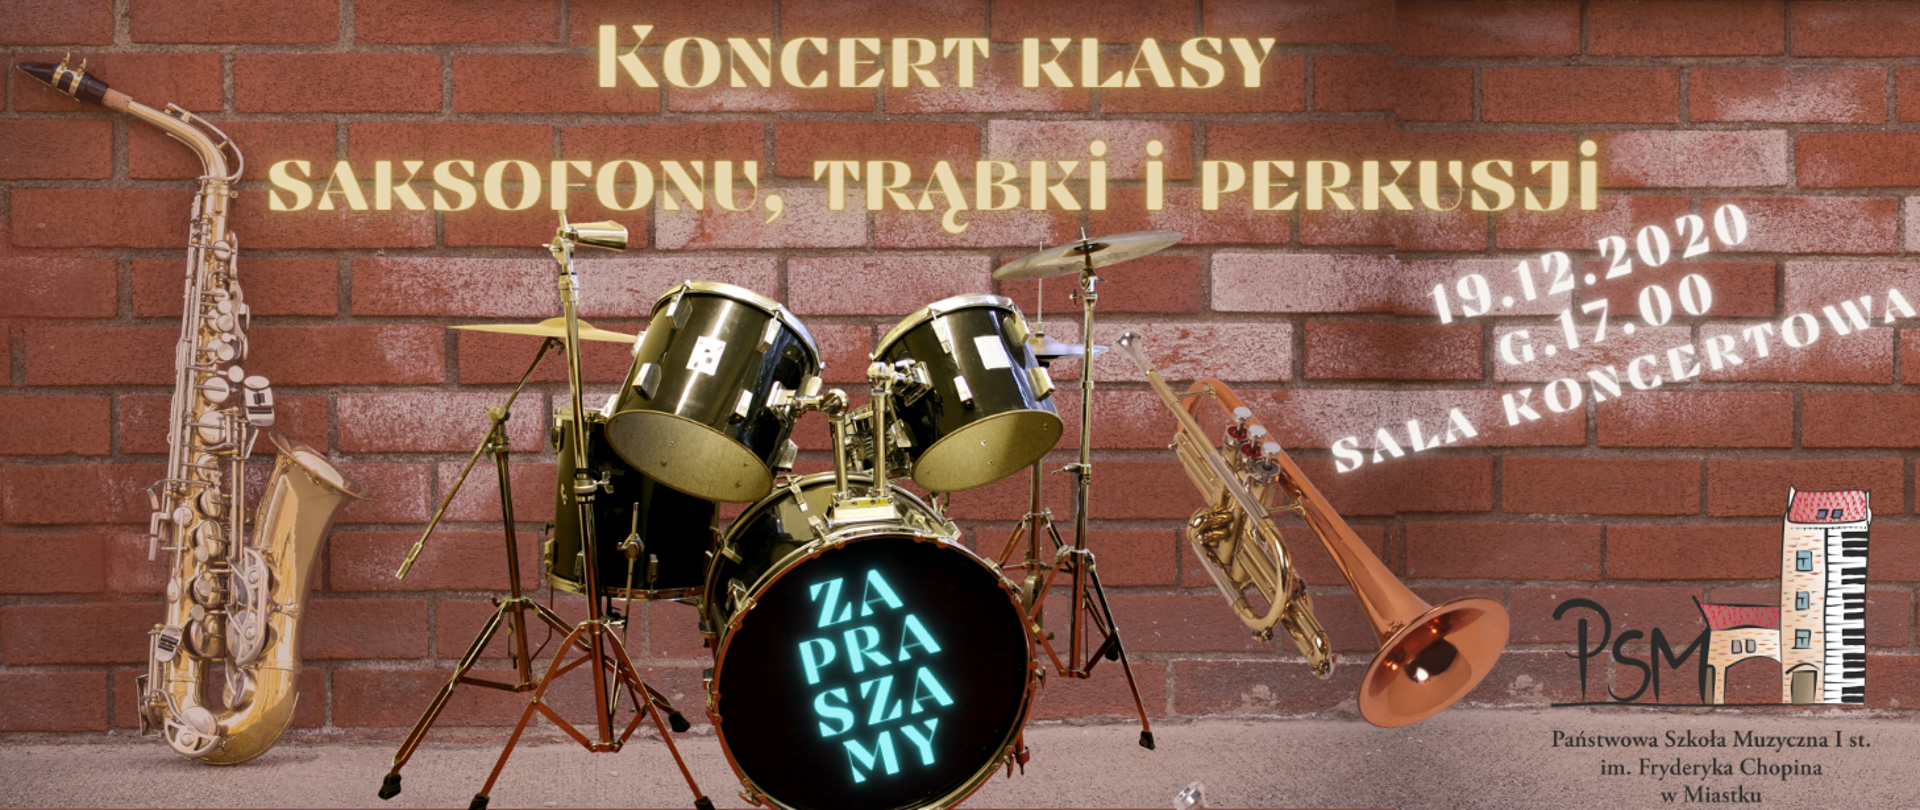 Grafika informująca o koncercie uczniów klas saksofonu, trąbki i perkusji, któ®y odbędzie się 19 grudnia 2022 r. w sali koncertowej naszej szkoły. 